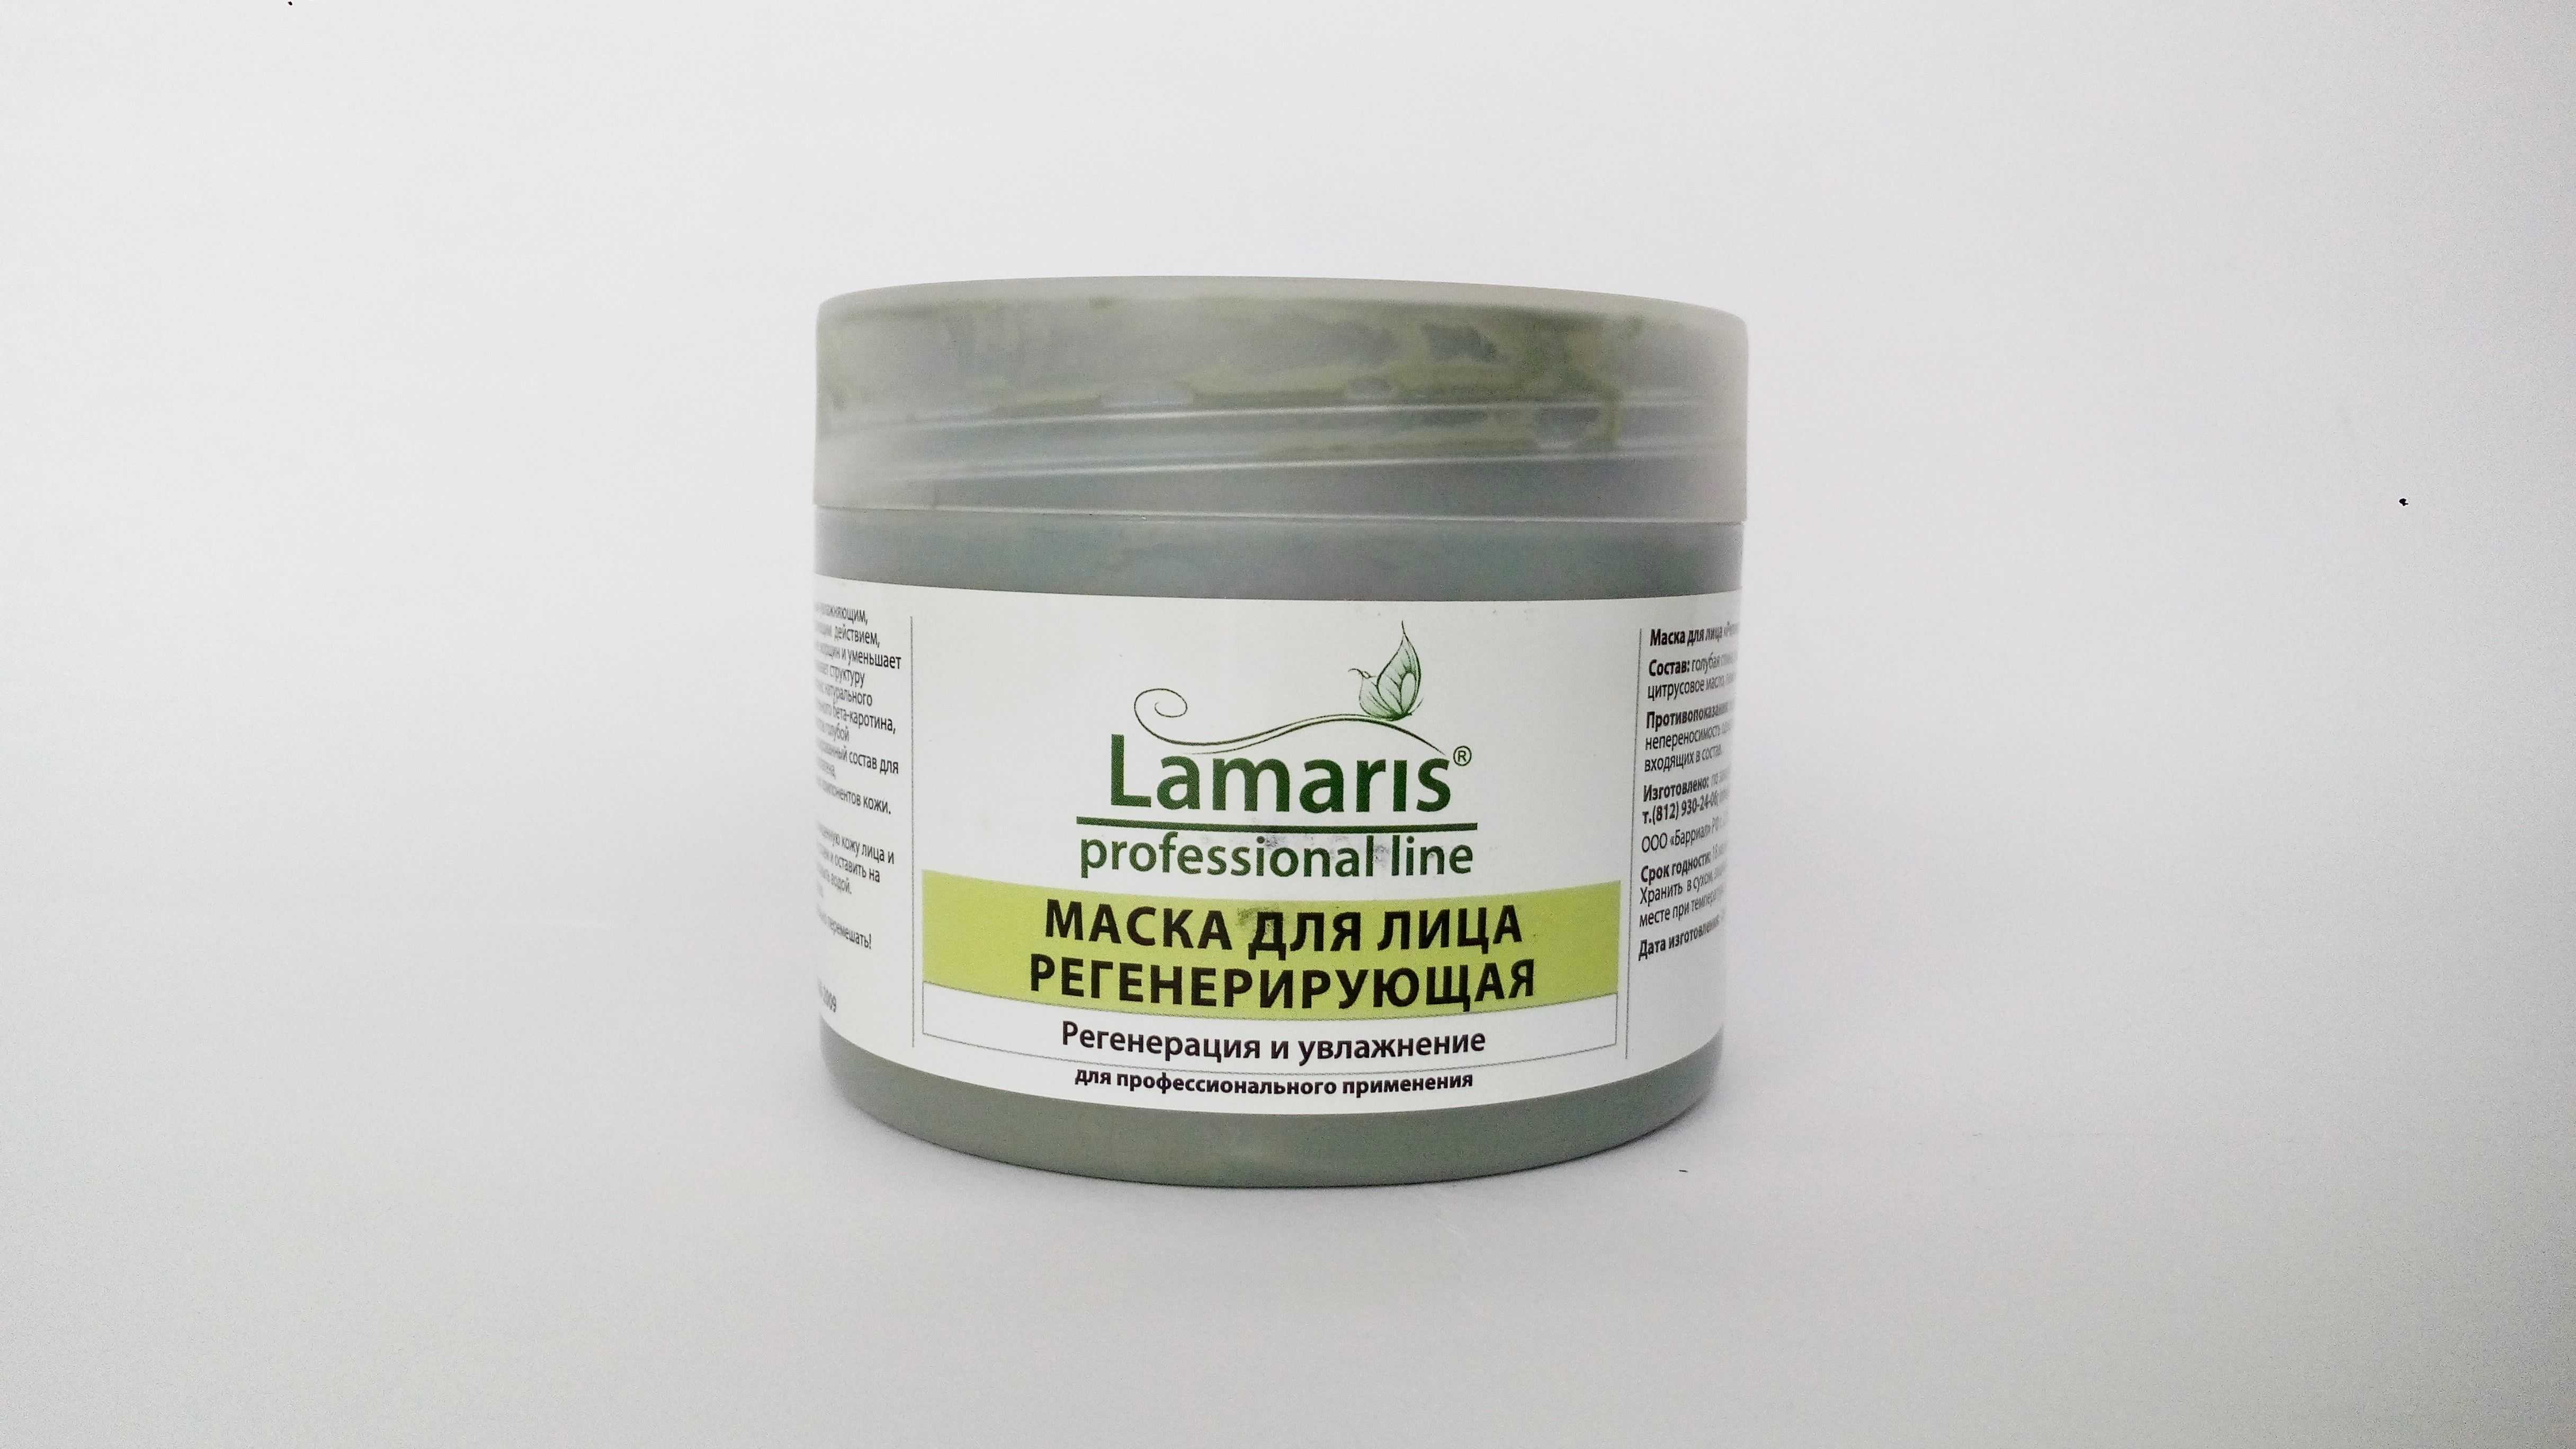 Маска для нормальной кожи. Lamaris маска Anti-acne, 500 г. Маска для лица. Маска для сухой кожи. Маски для жирной кожи.